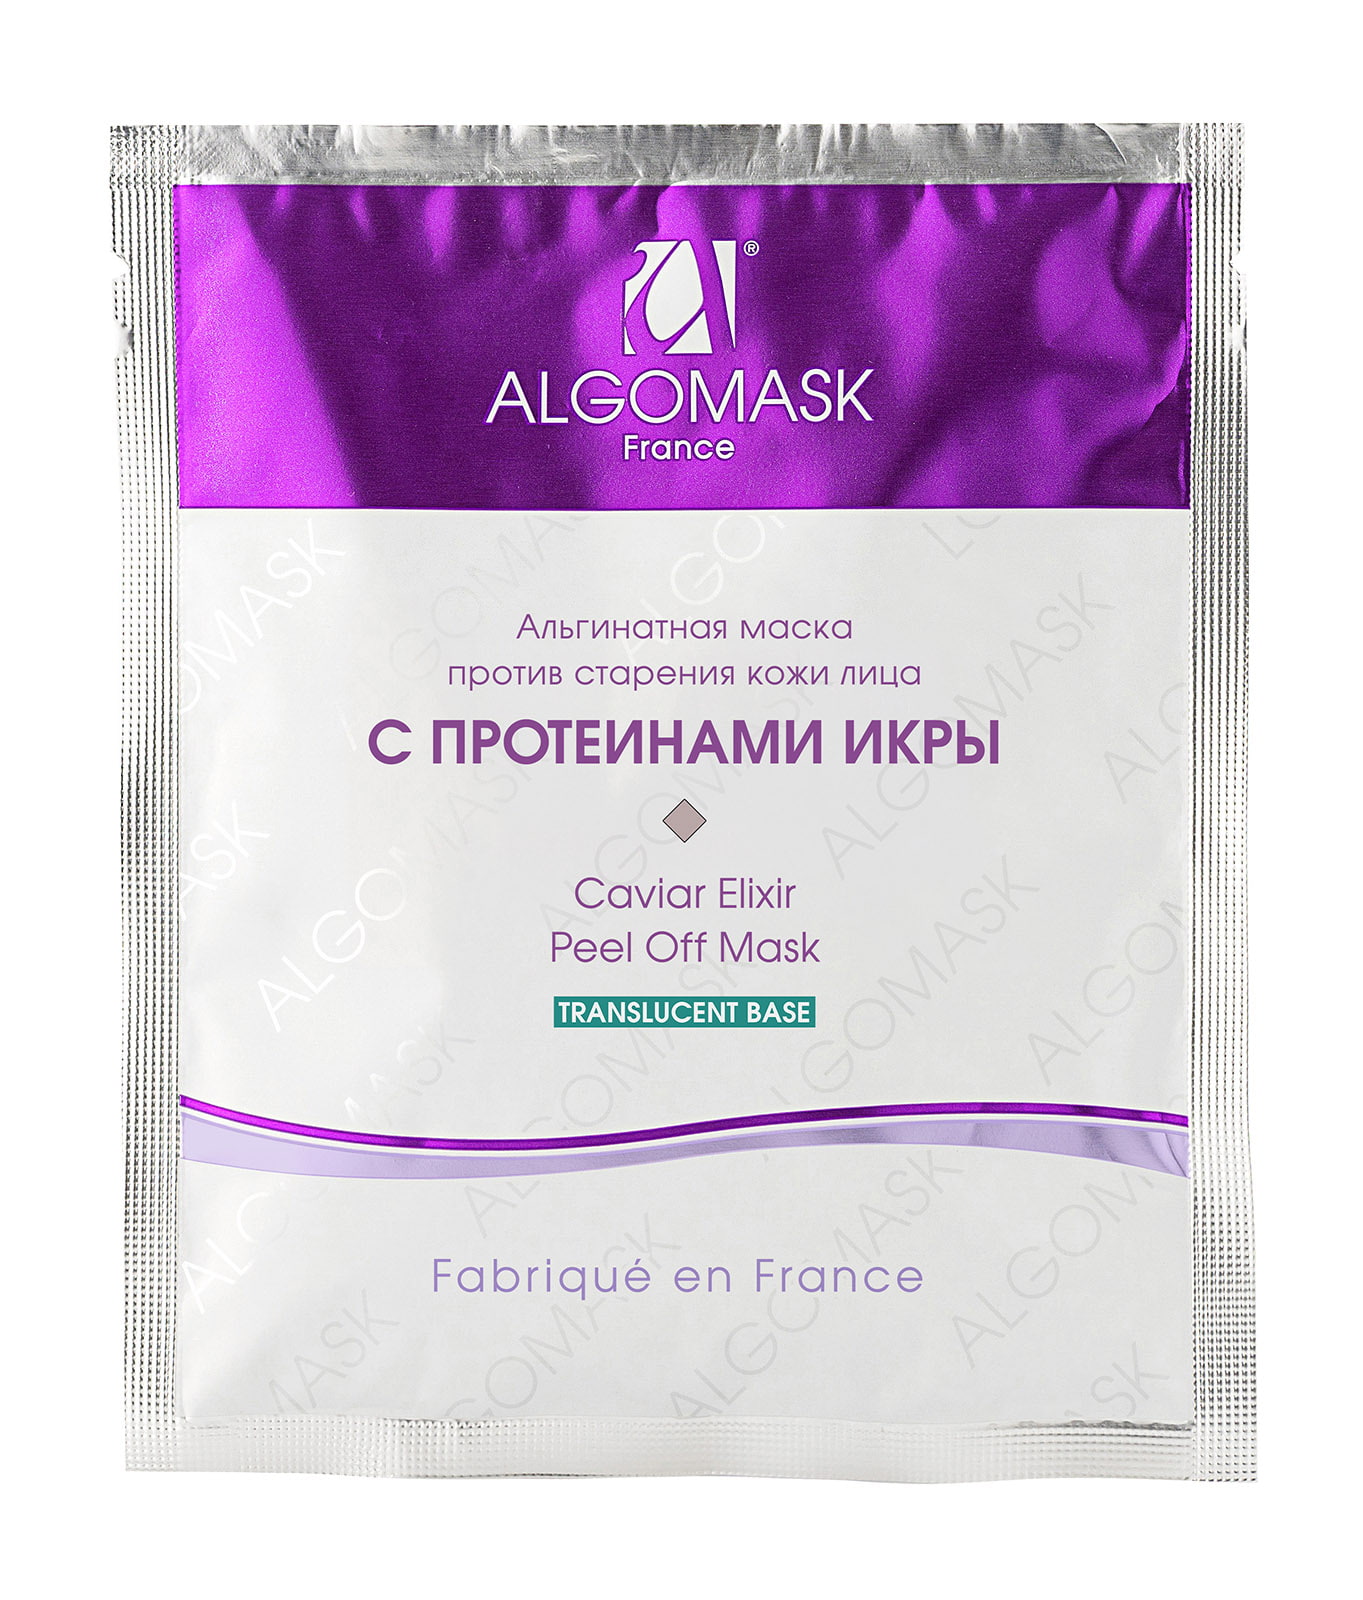 Маска альгинатная против старения кожи лица с протеинами икры (translucent base) - 25 г